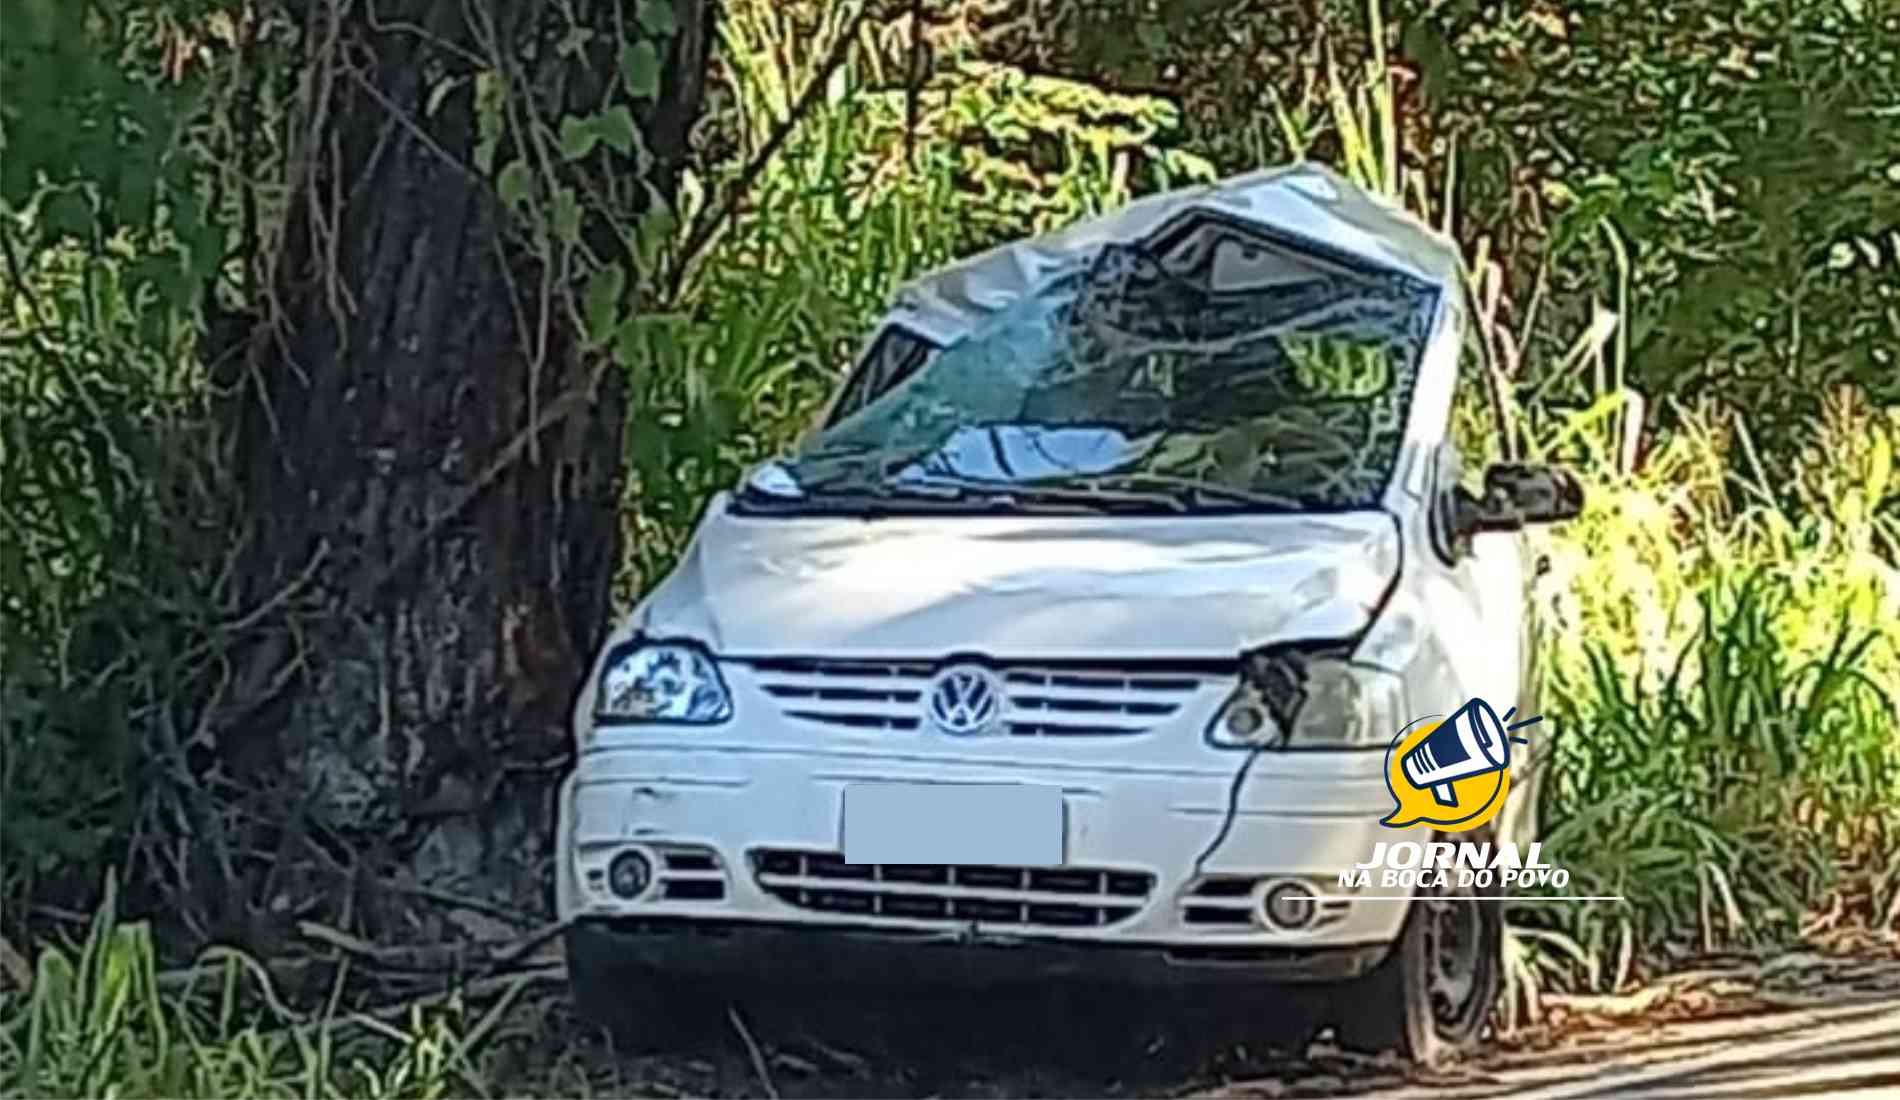 Jovem é socorrido após carro bater em árvore na RJ-116, entre Aperibé e Pádua